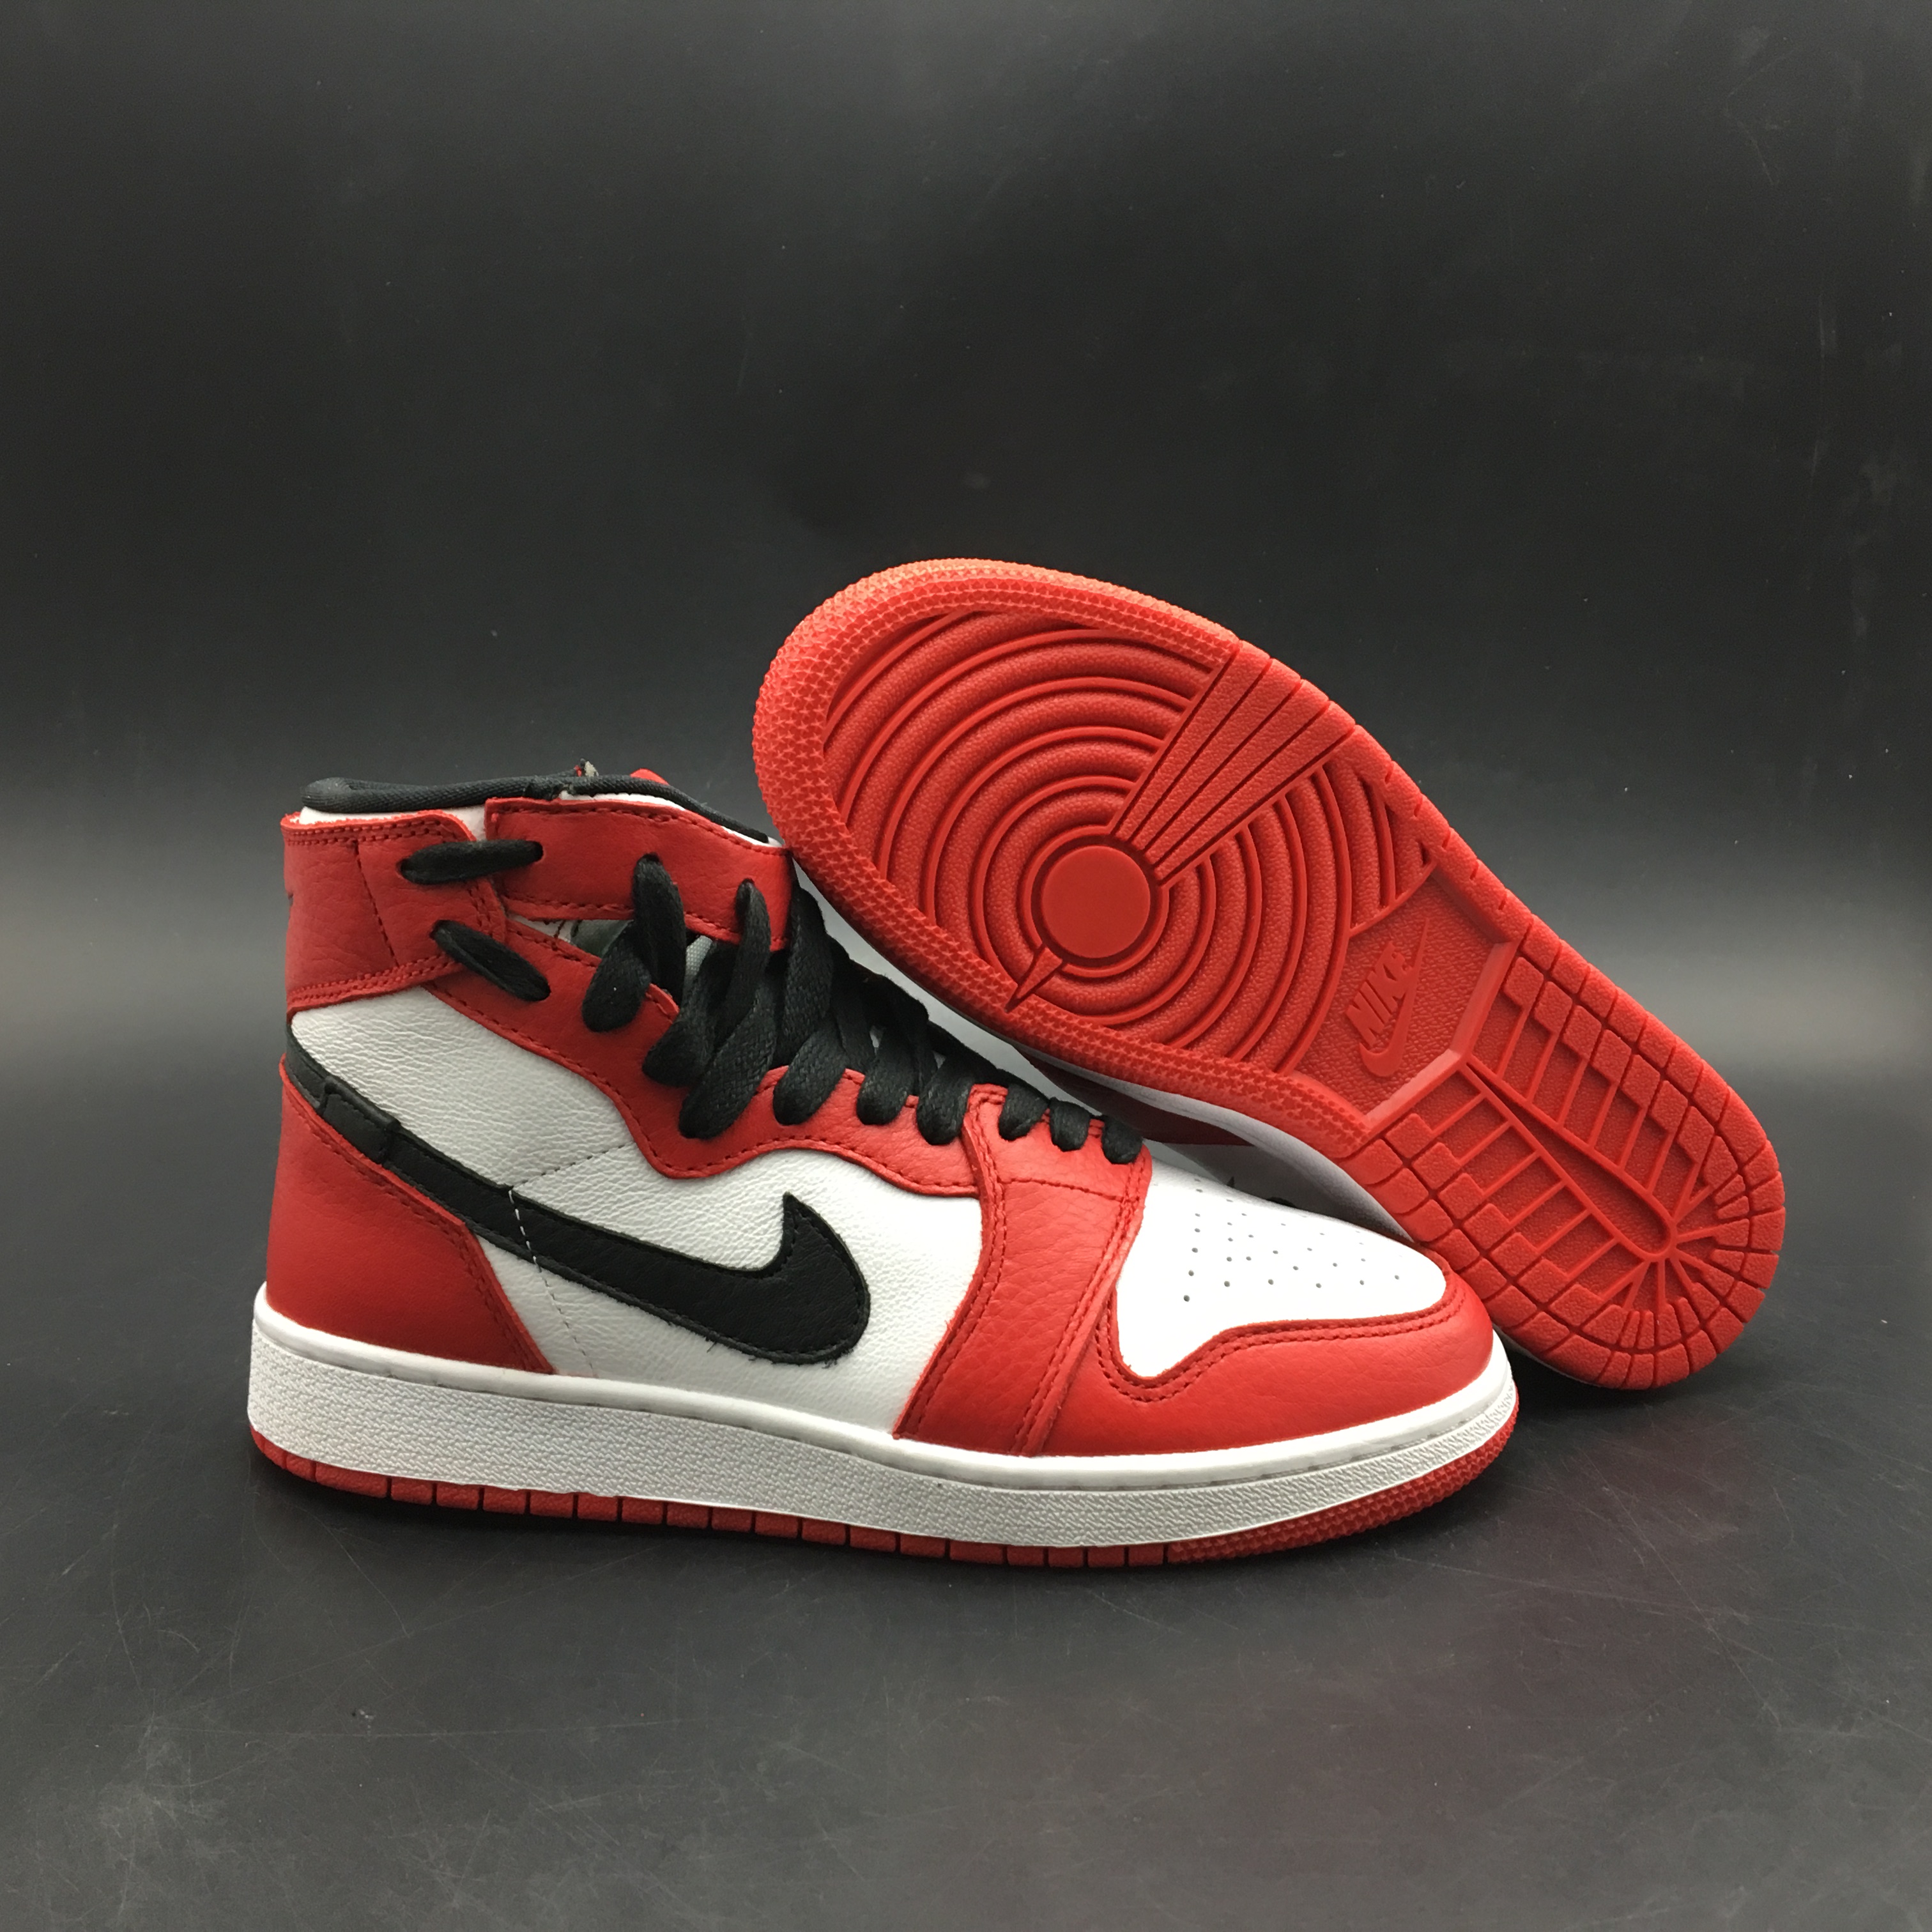 Air Jordan 1 REBEL XX OG TOP 3 Chicago Red White Black Shoes [18og7417